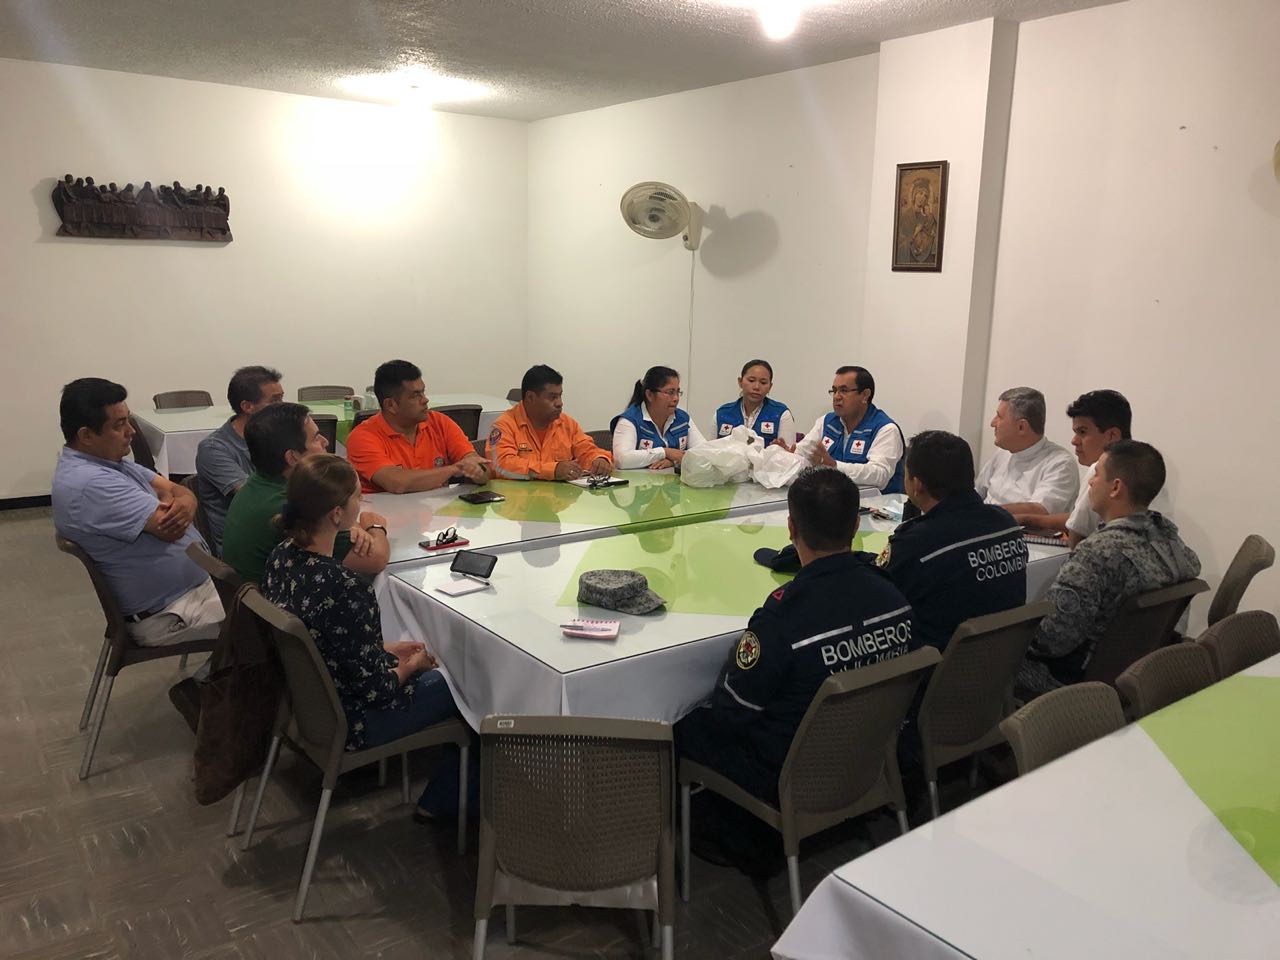 Se activa Plan de Emergencia al migrante de paso en Casanare